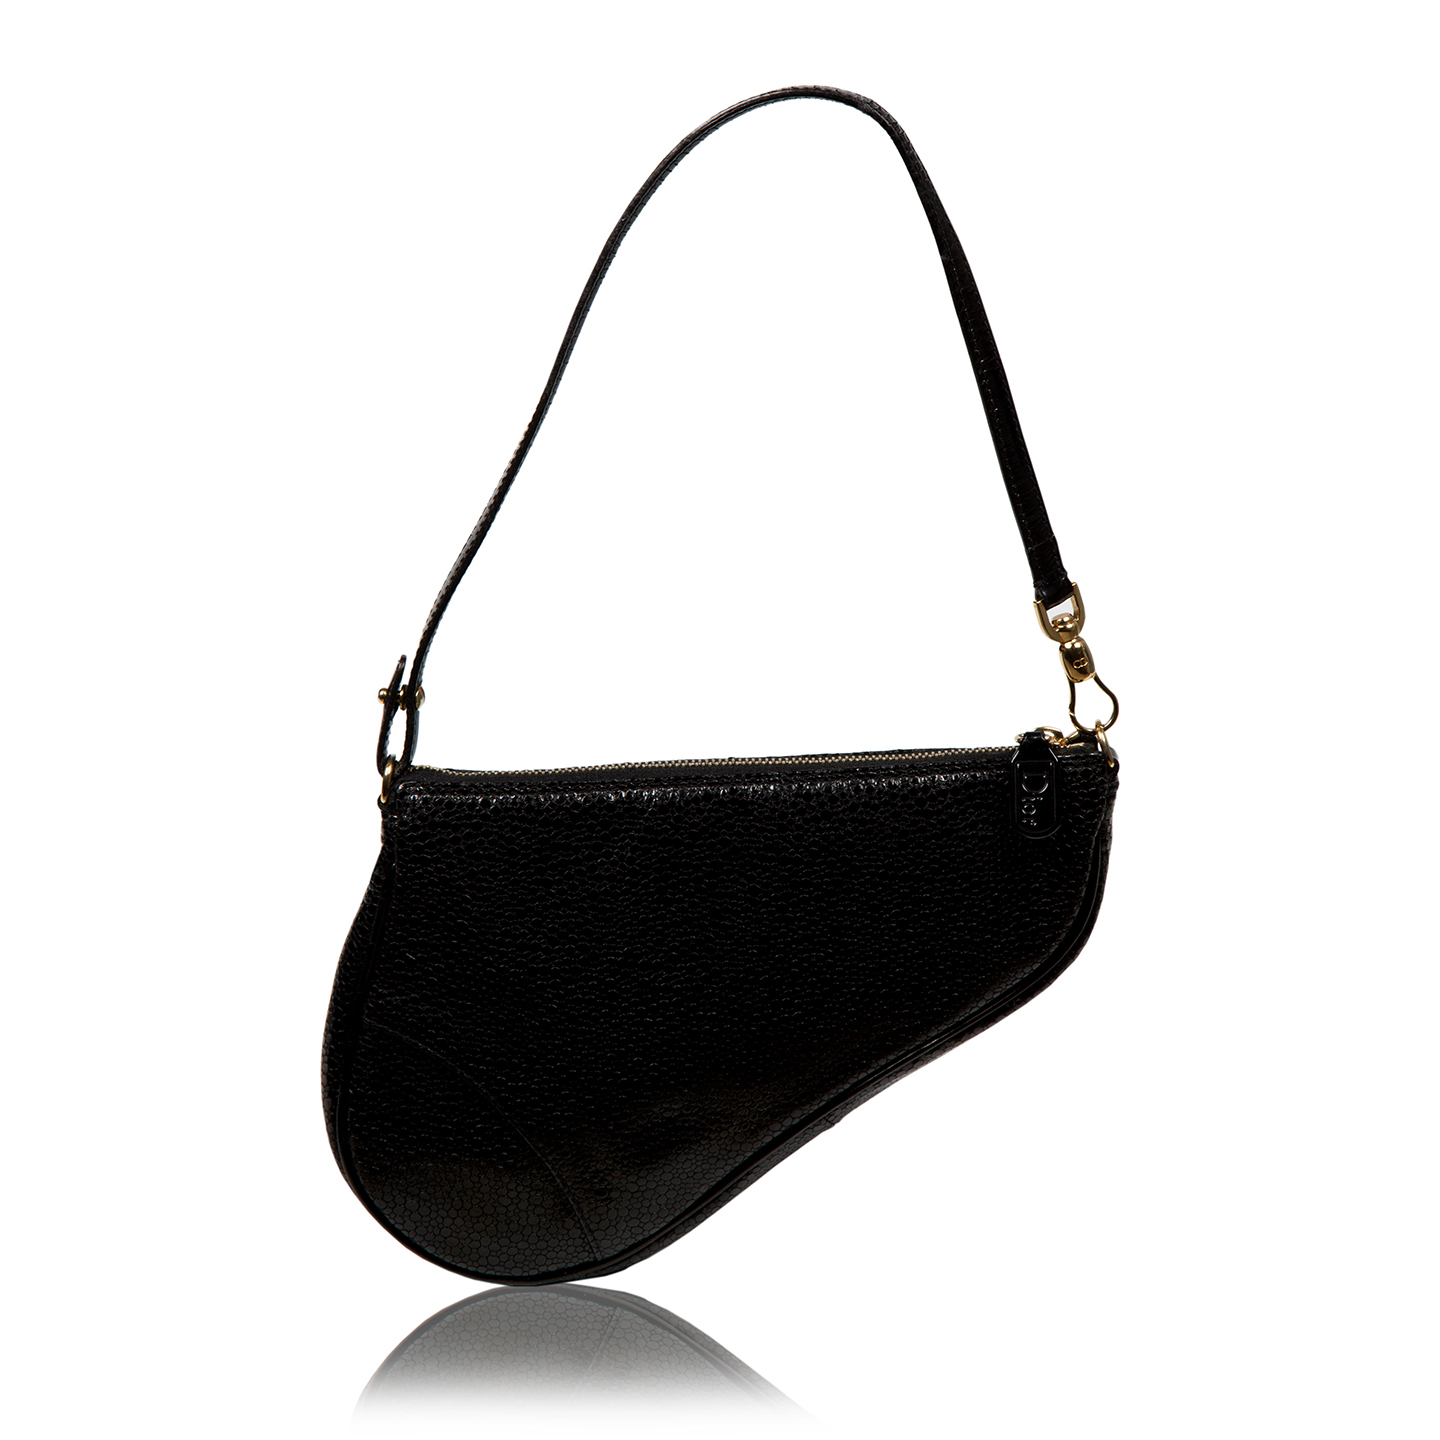 VINTAGE Christian Dior Black Leather Saddle Bag - LabelCentric